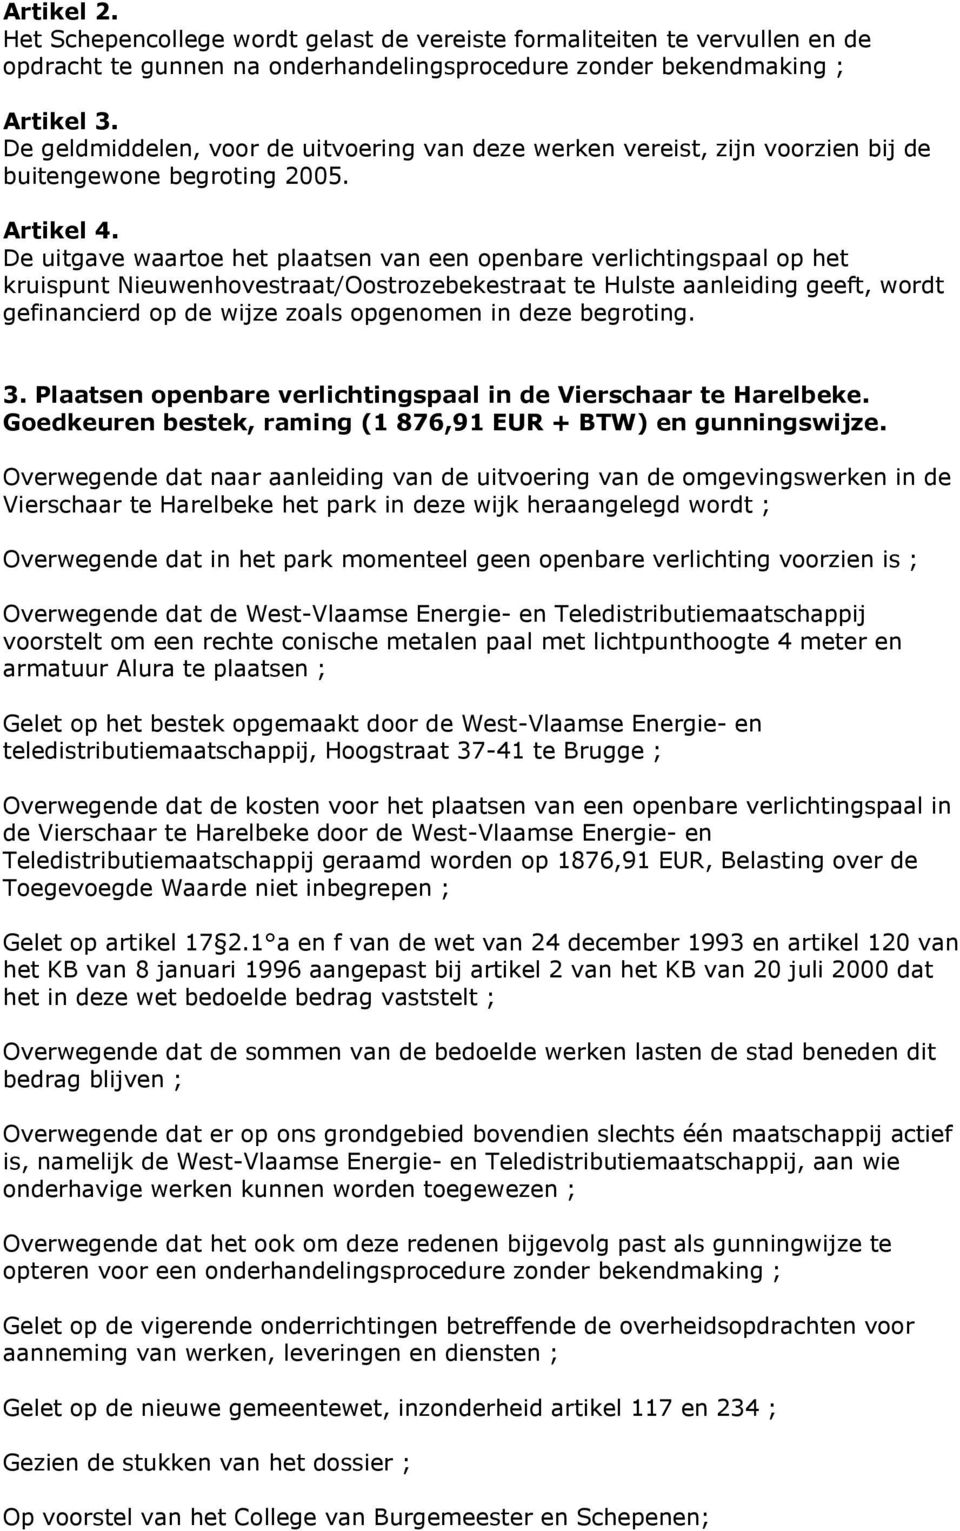 De uitgave waartoe het plaatsen van een openbare verlichtingspaal op het kruispunt Nieuwenhovestraat/Oostrozebekestraat te Hulste aanleiding geeft, wordt gefinancierd op de wijze zoals opgenomen in